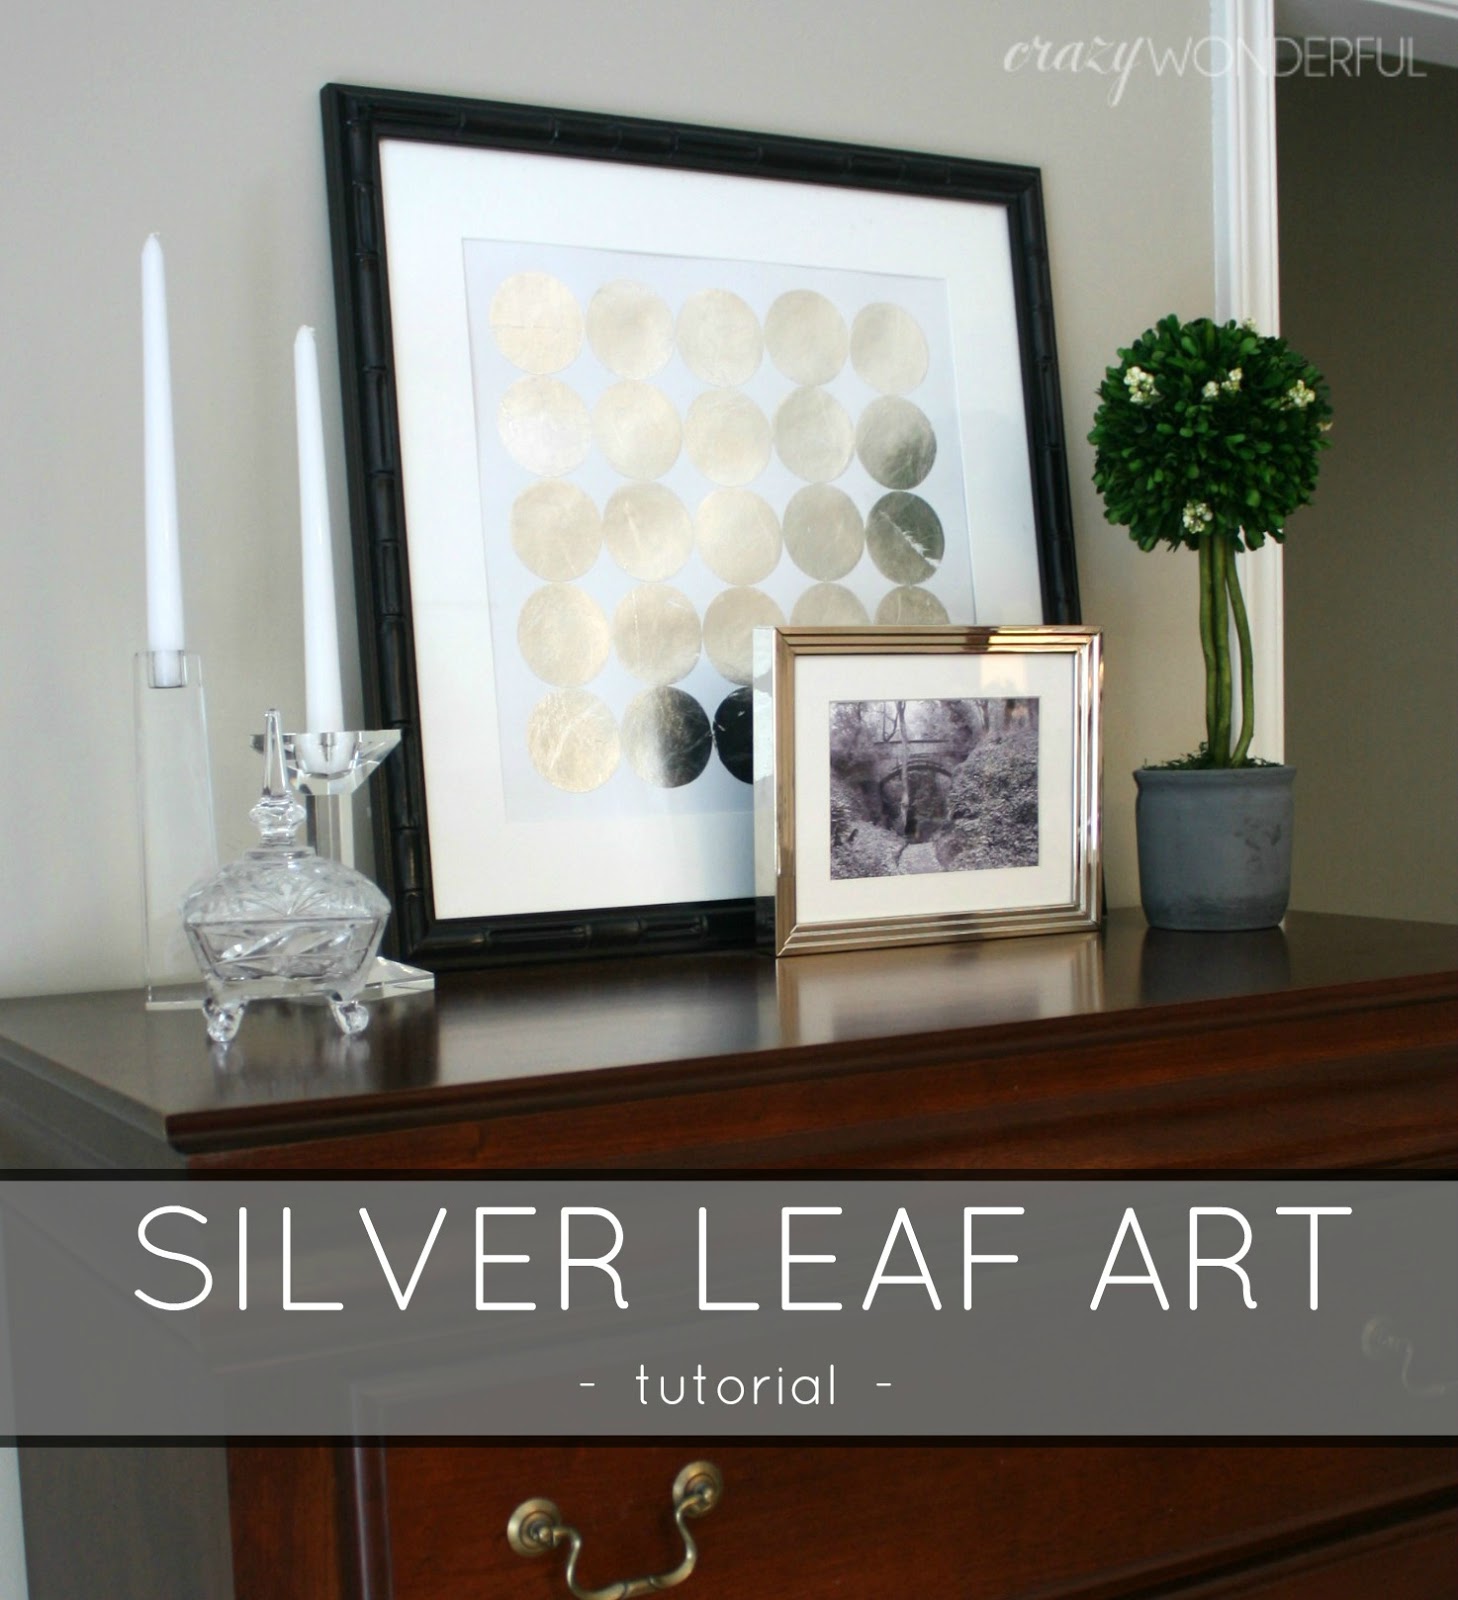 Silver Leaf Art Tutorial Crazy Wonderful